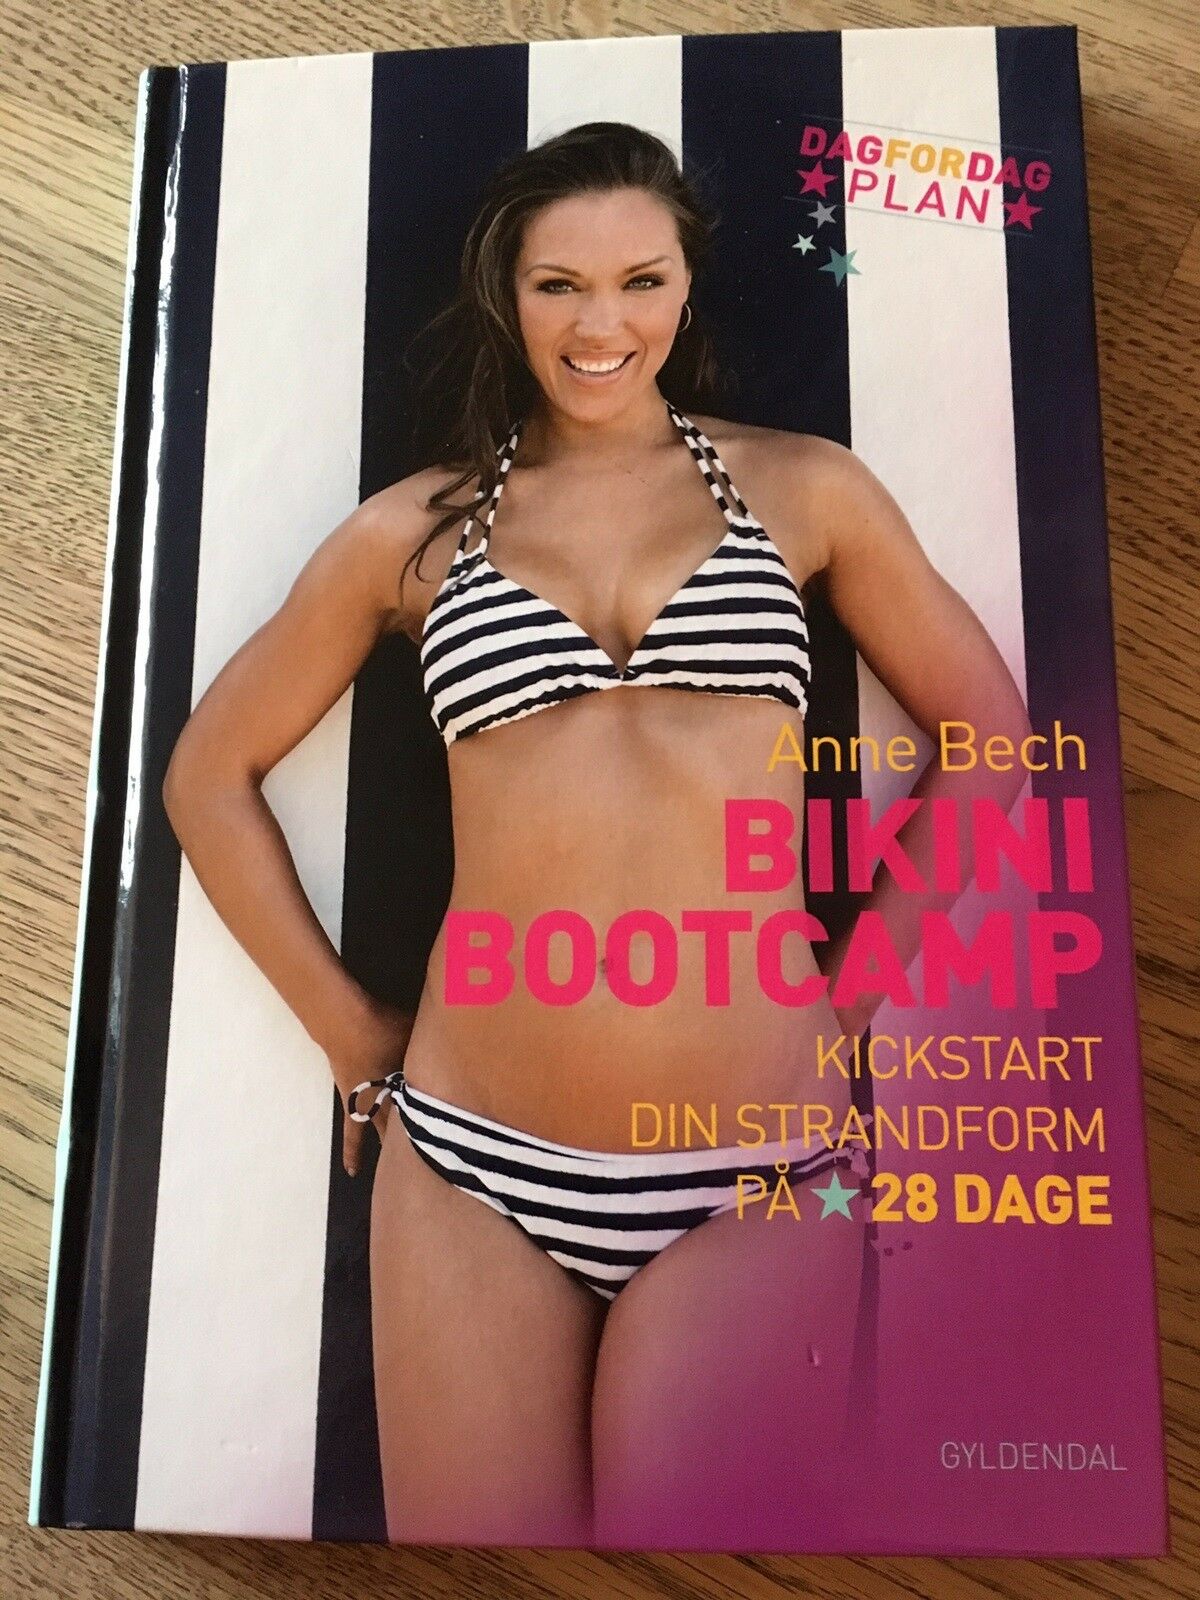 mens fortov tredobbelt Bikini bootcamp - kickstart din - dba.dk - Køb og Salg af Nyt og Brugt